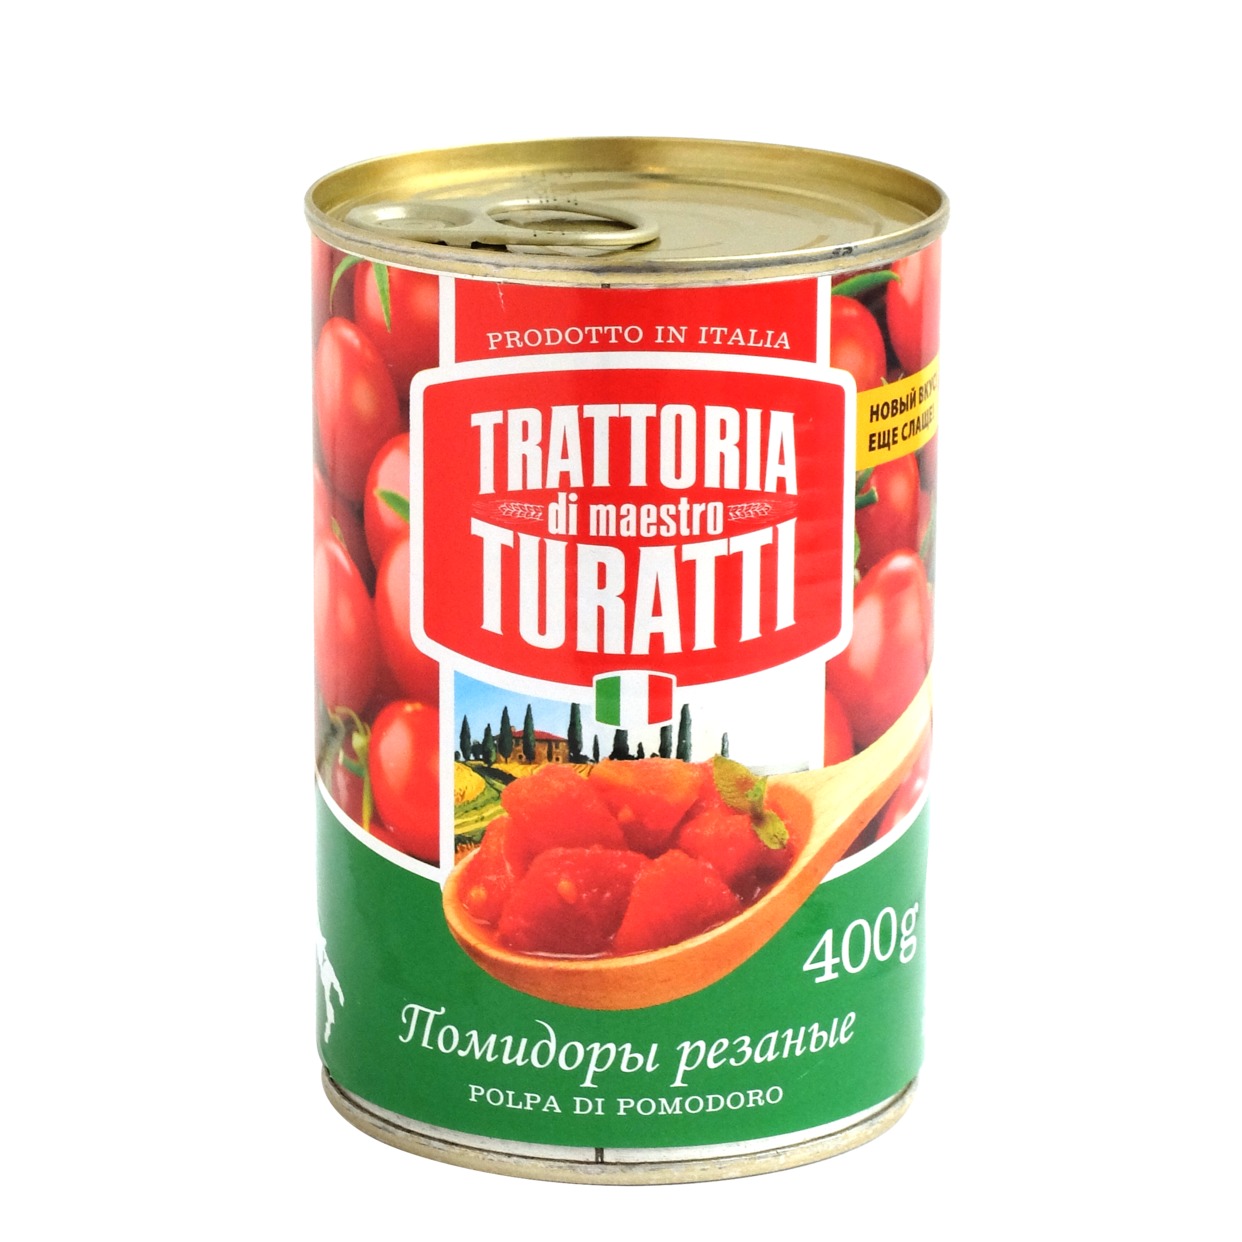 Овощи консервированные без добавления уксуса: Tоматы очищенные резаные,торговой марки TRATTORIA DI MAESTRO TURATTI по акции в Пятерочке